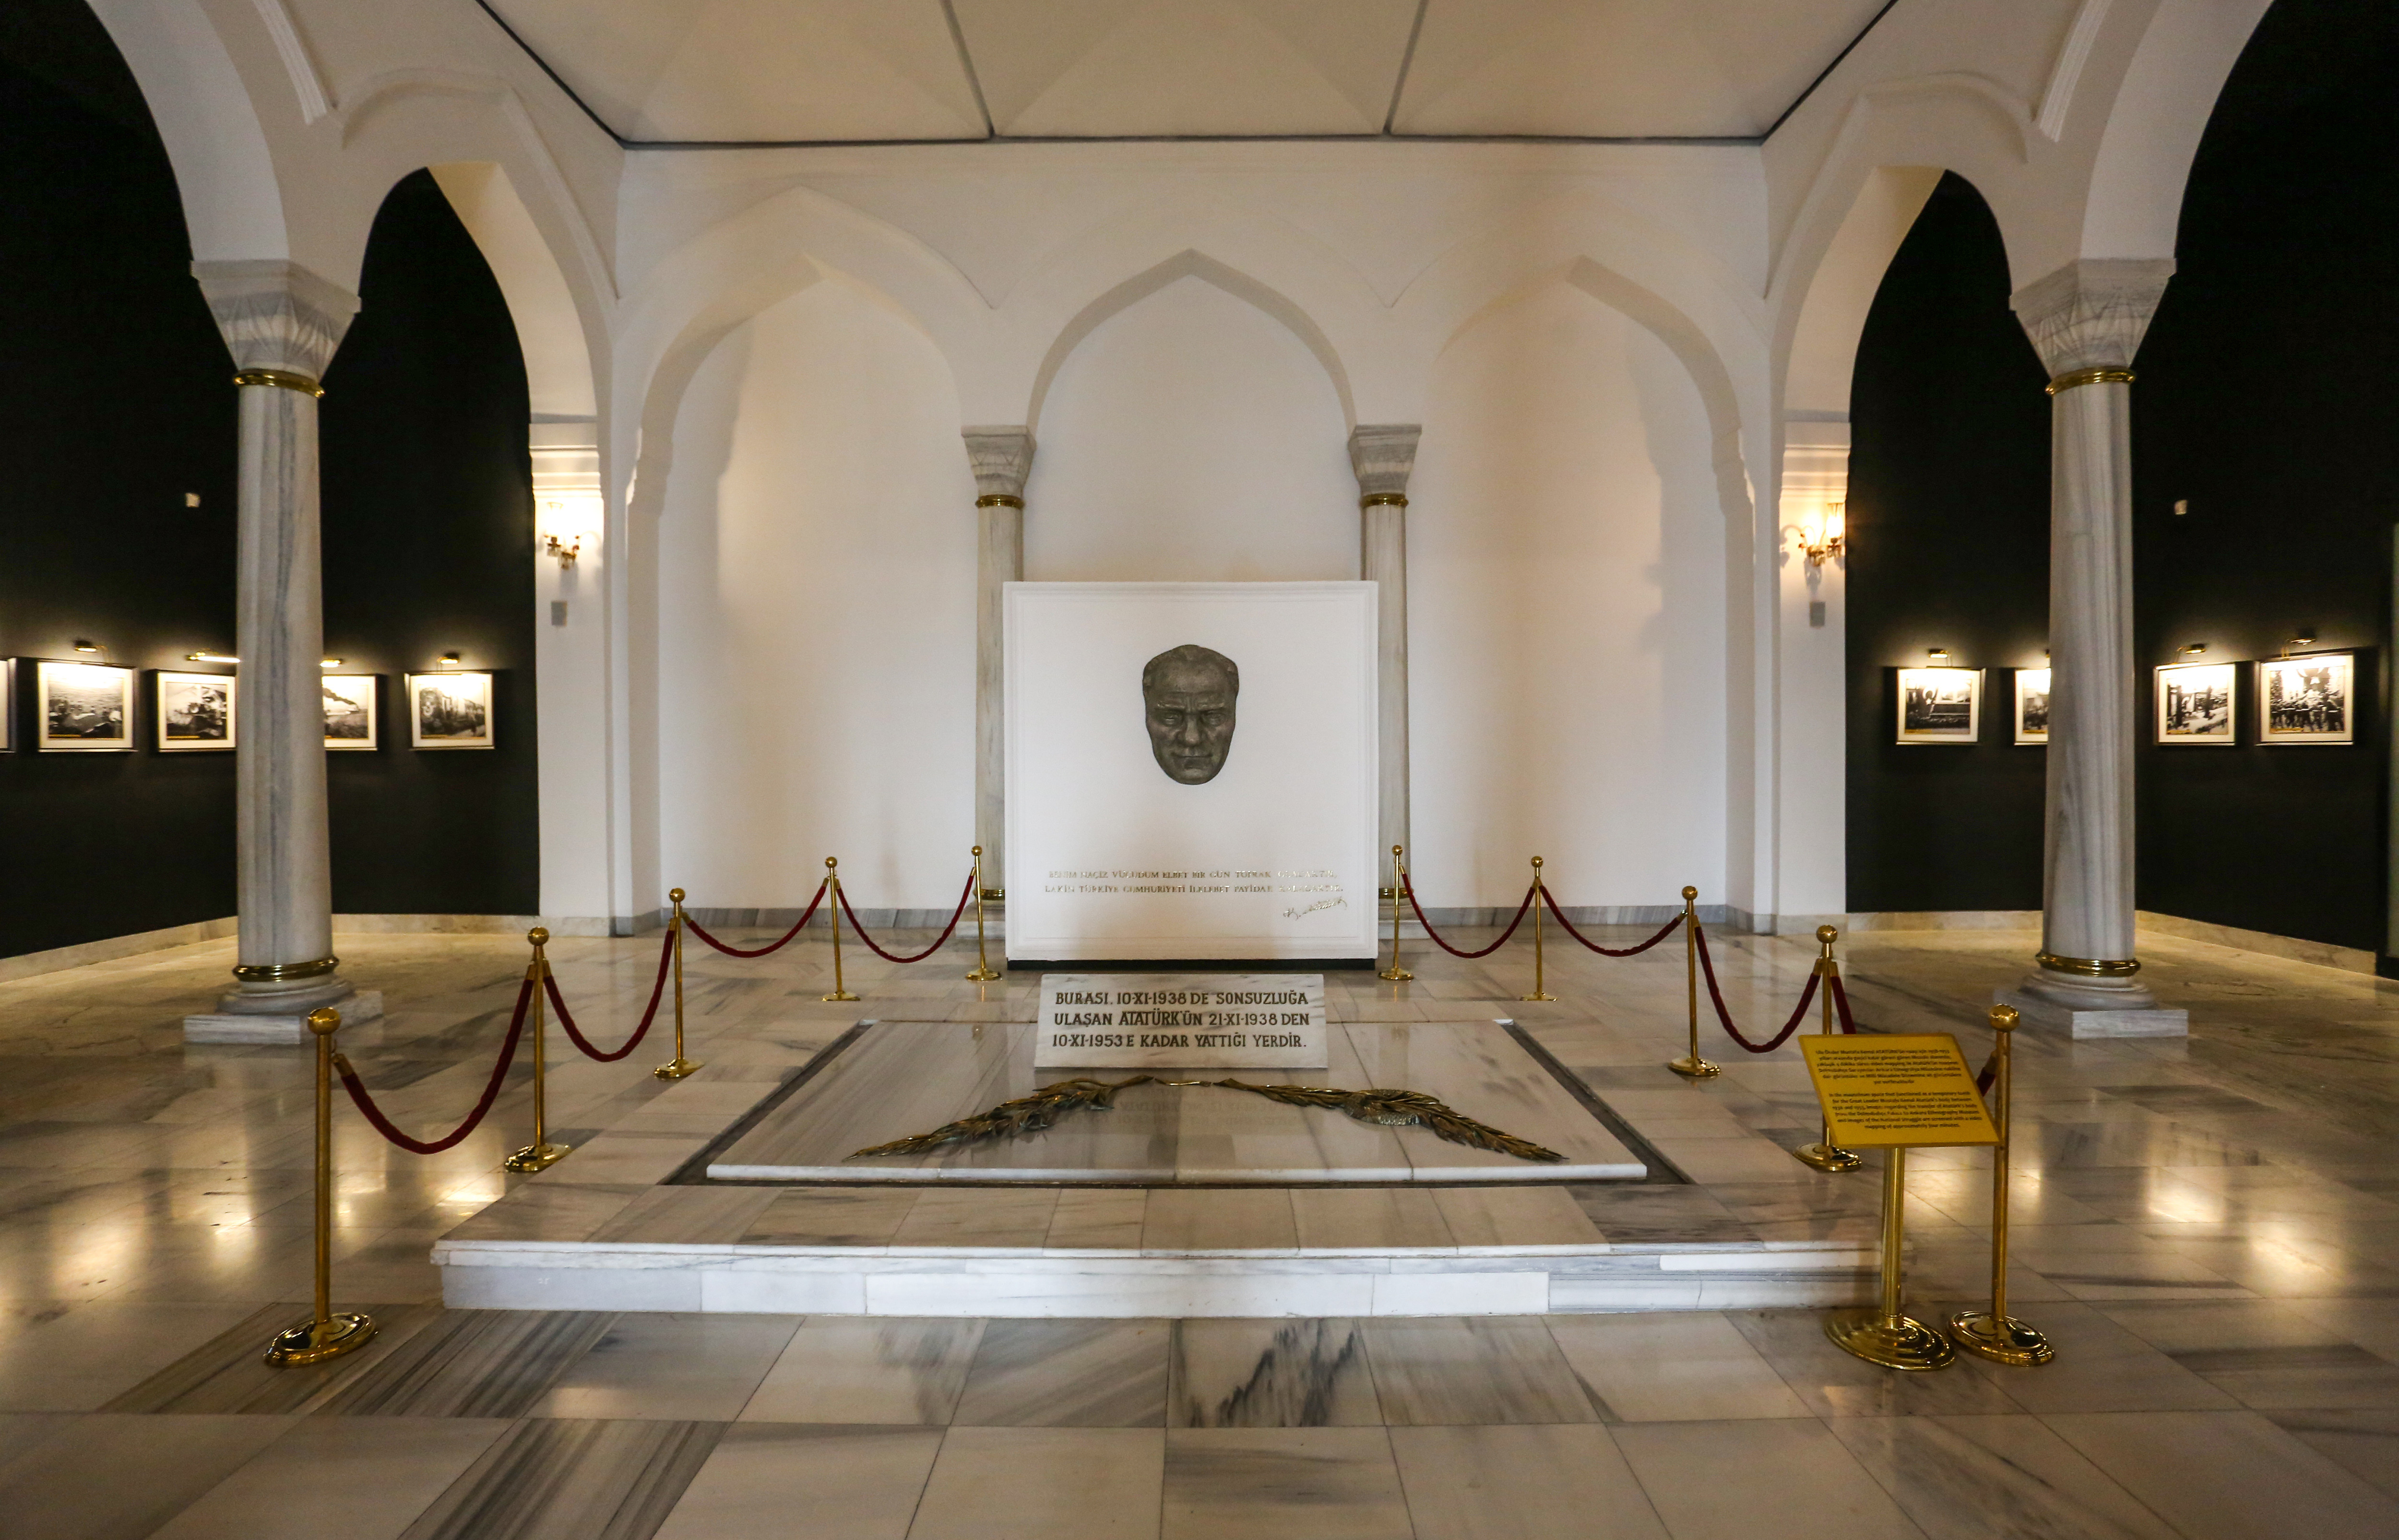 On ayrı salonda on ayrı kurguyla düzenlenen müzenin giriş kısmında Mustafa Kemal Atatürk'ün Anıtkabir'e nakledilmeden önce naaşının bekletildiği mozole bulunmaktadır.